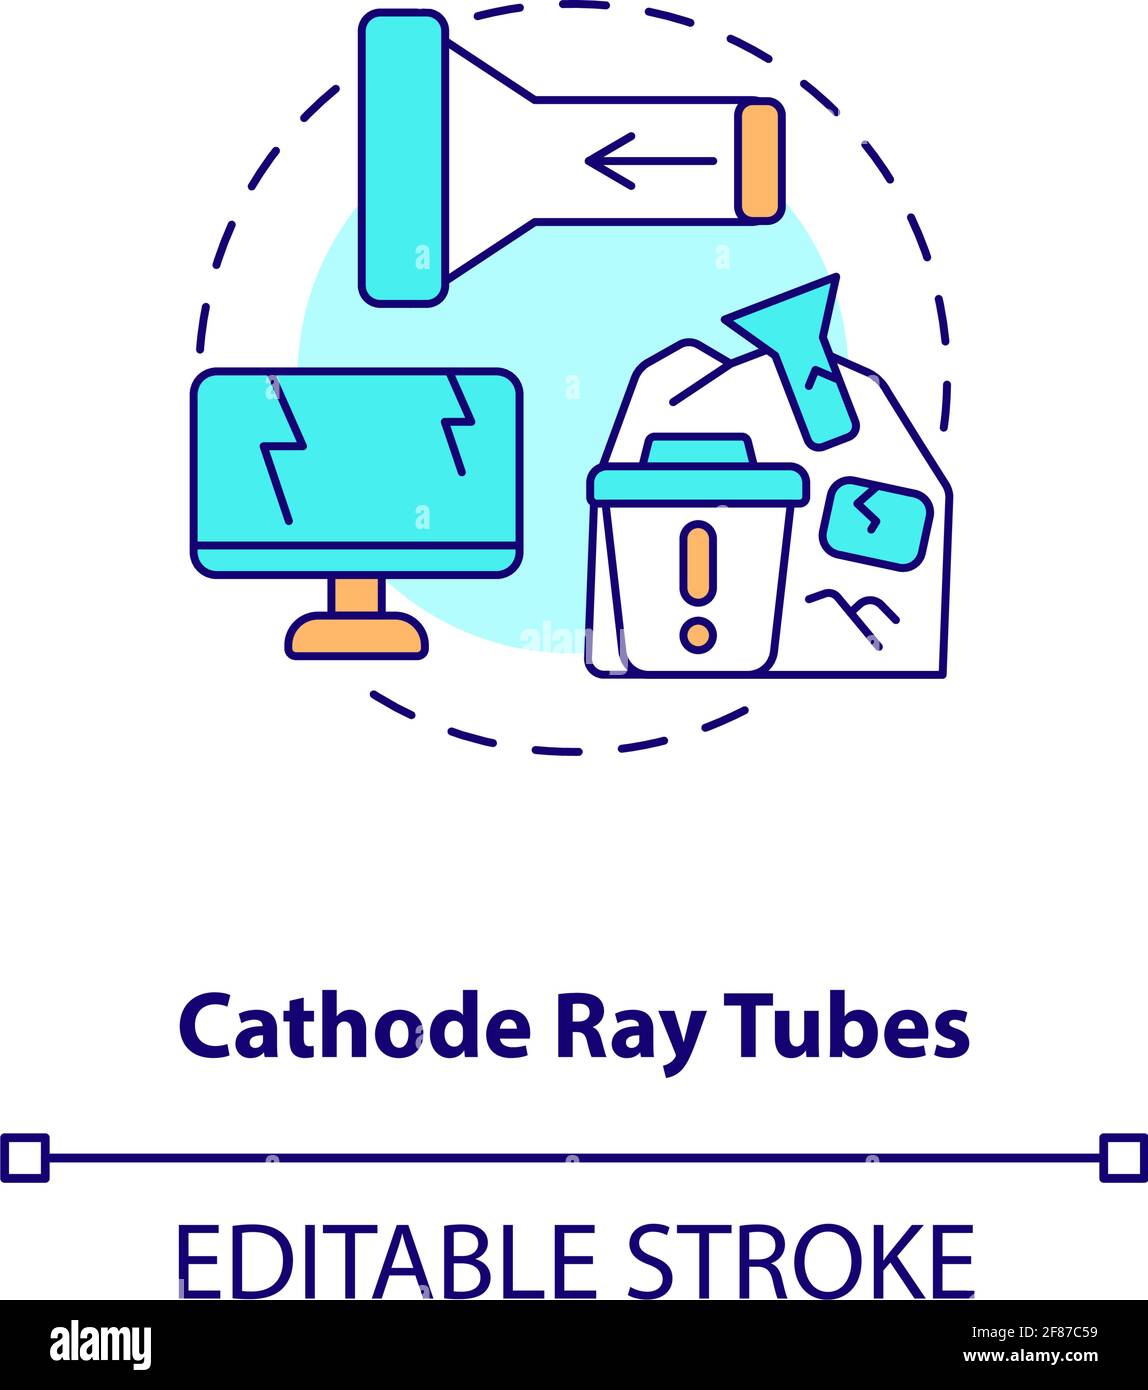 Cathode ray tubes concept icon Stock Vector